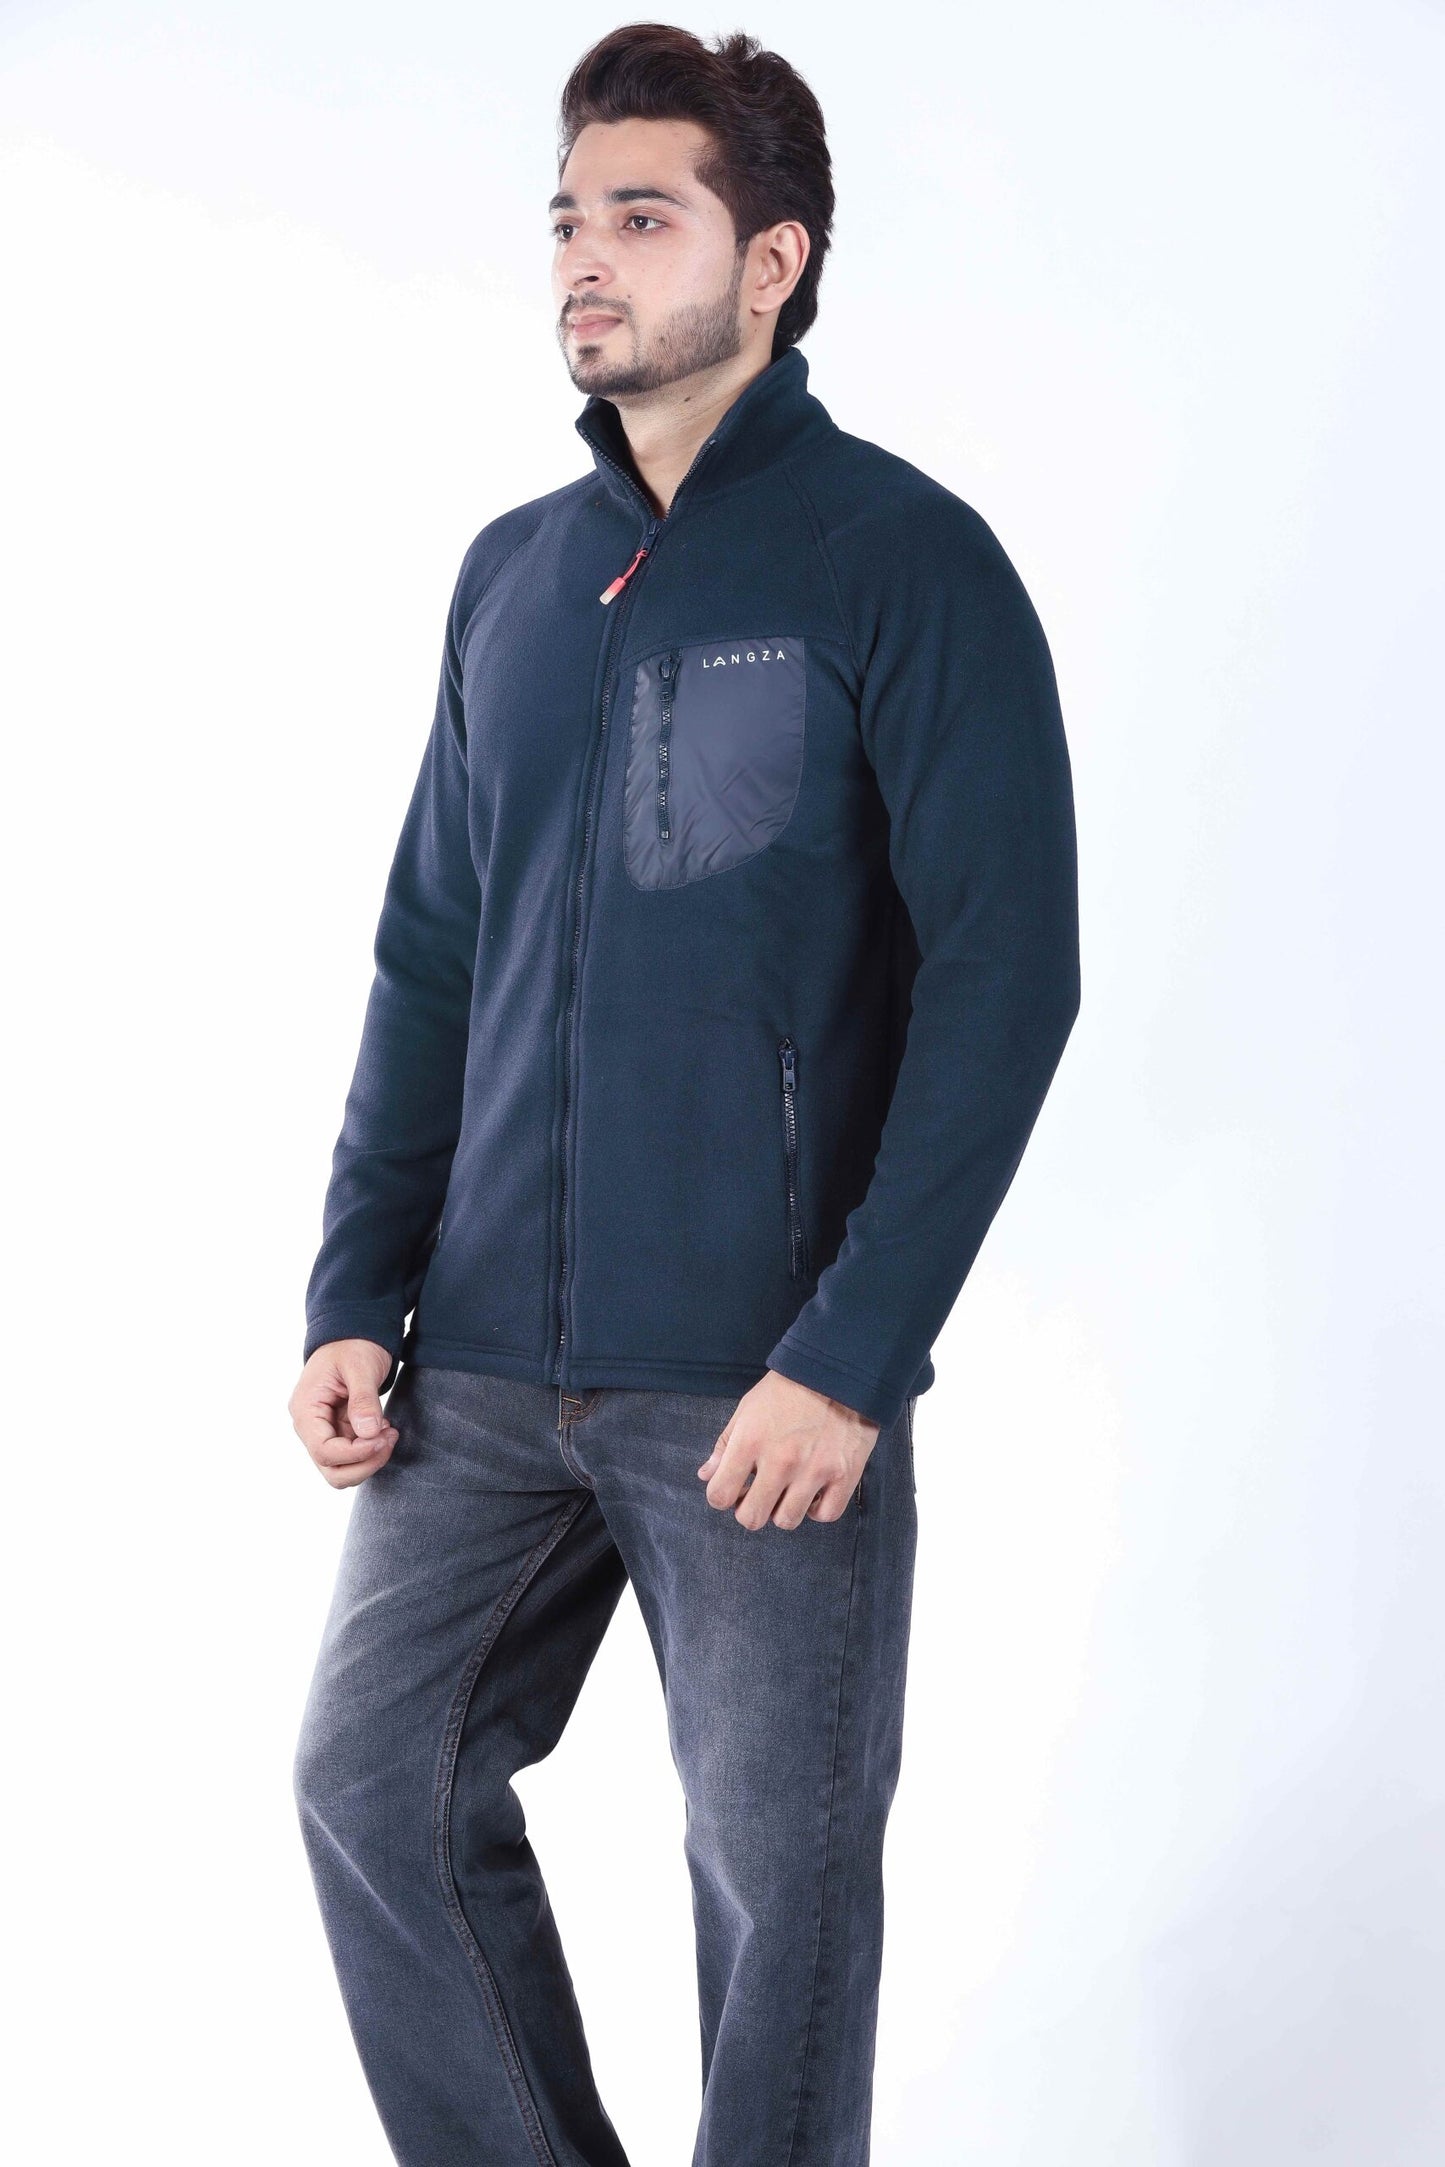 Langza Men's Hiker's Full Zip Polartec® Fleece